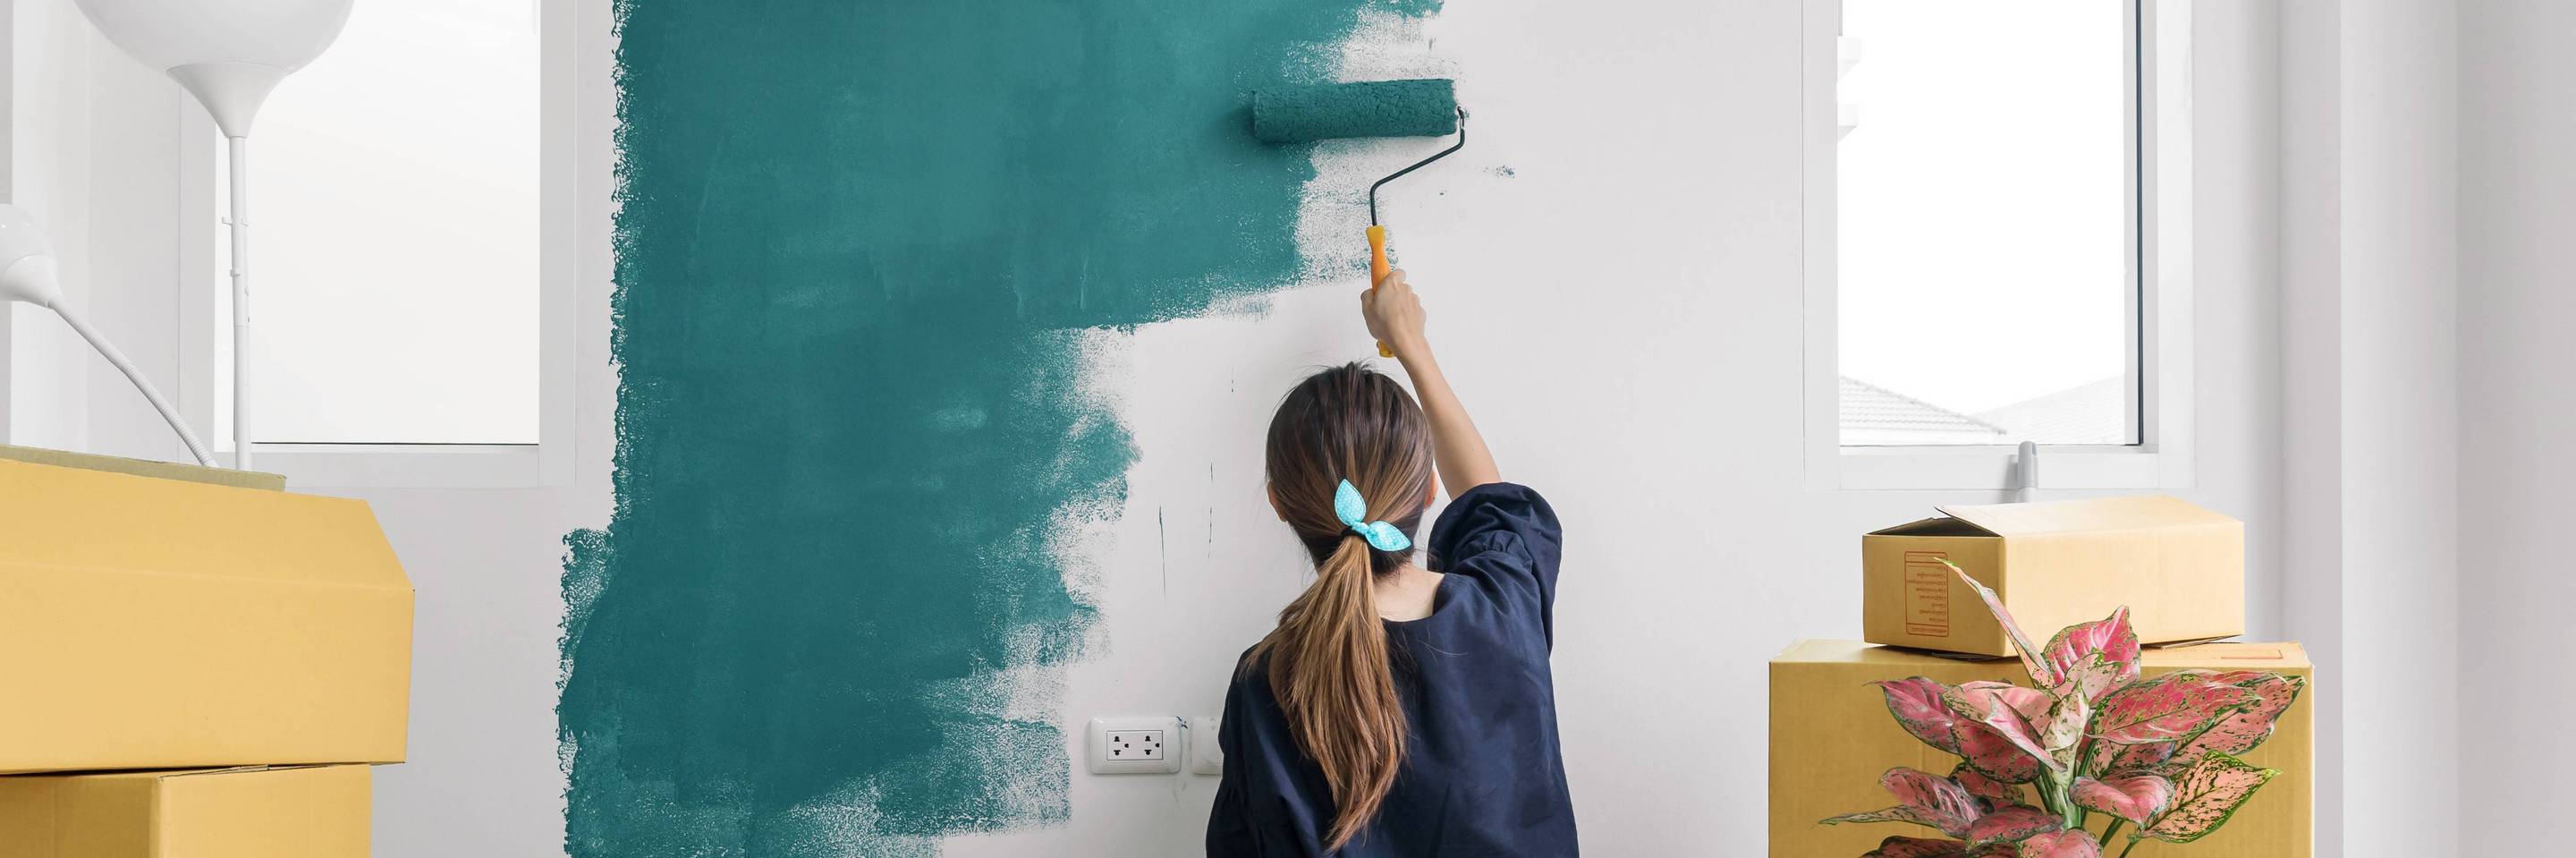 Frau beim Umzug streicht eine Wand in Green Farben